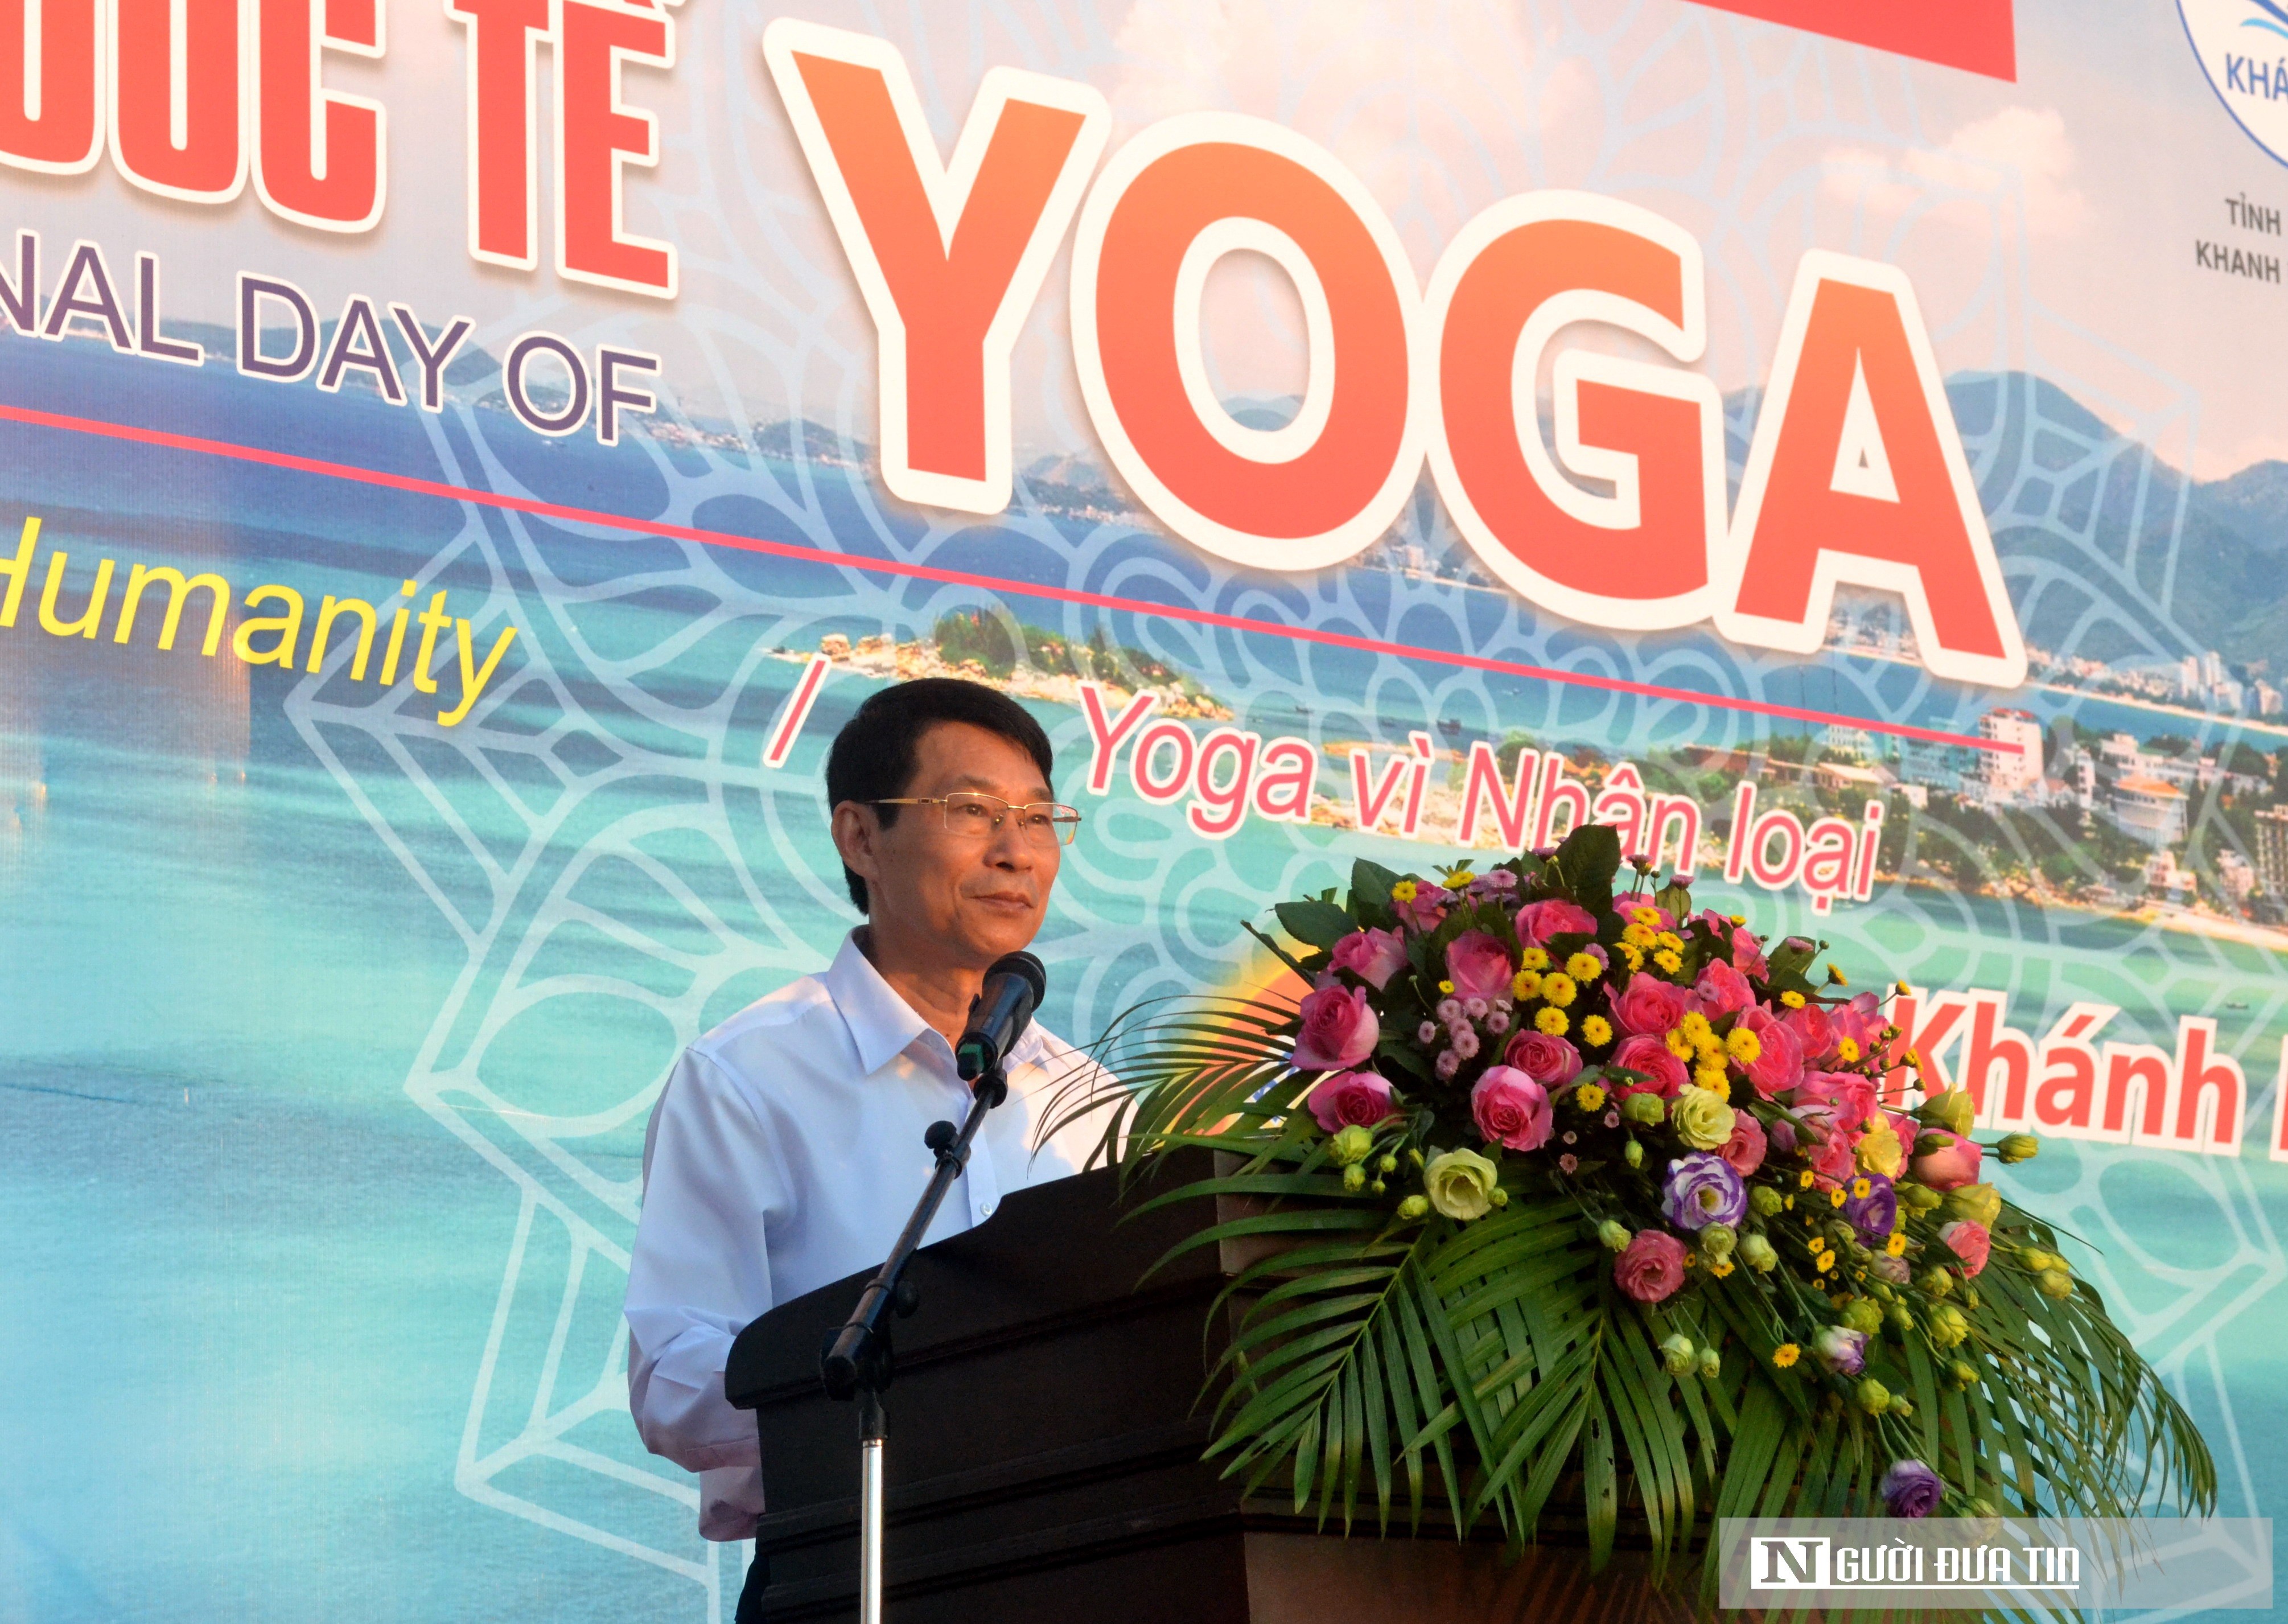 Dân sinh - Hơn 1.200 người ở Khánh Hòa tham gia đồng diễn yoga